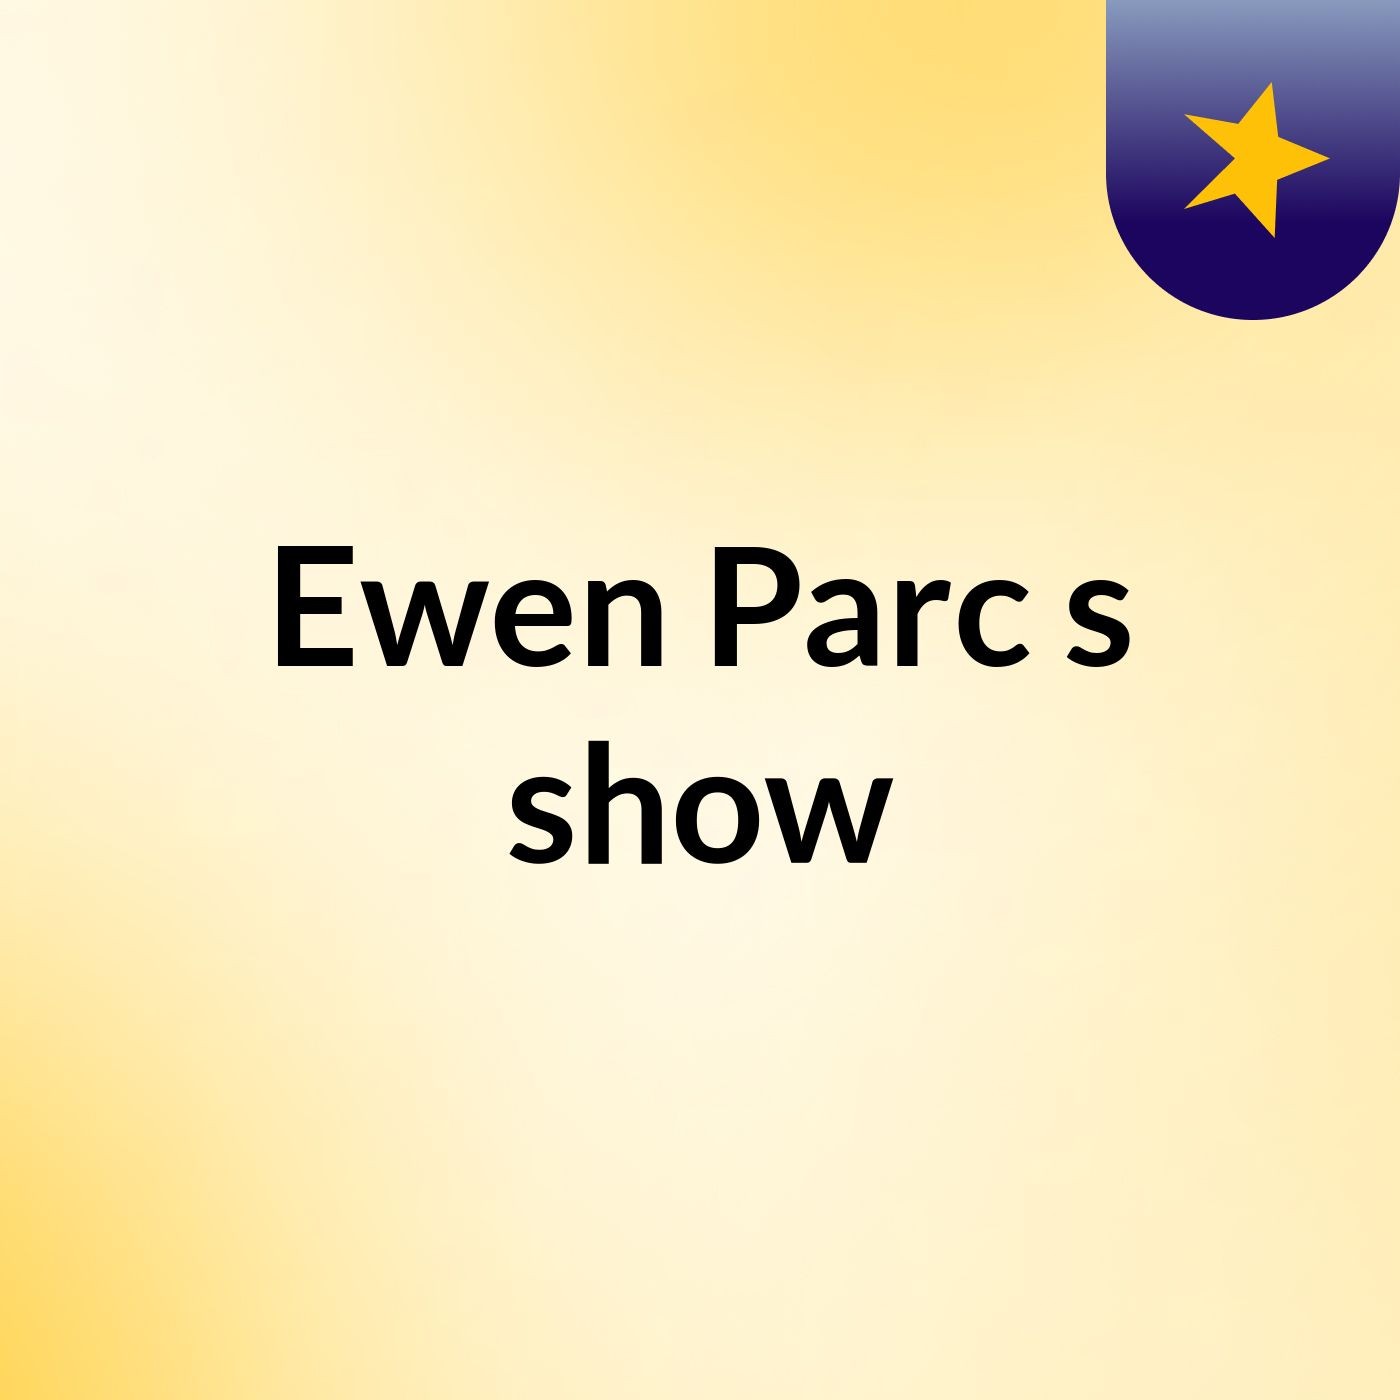 Ewen Parc's show